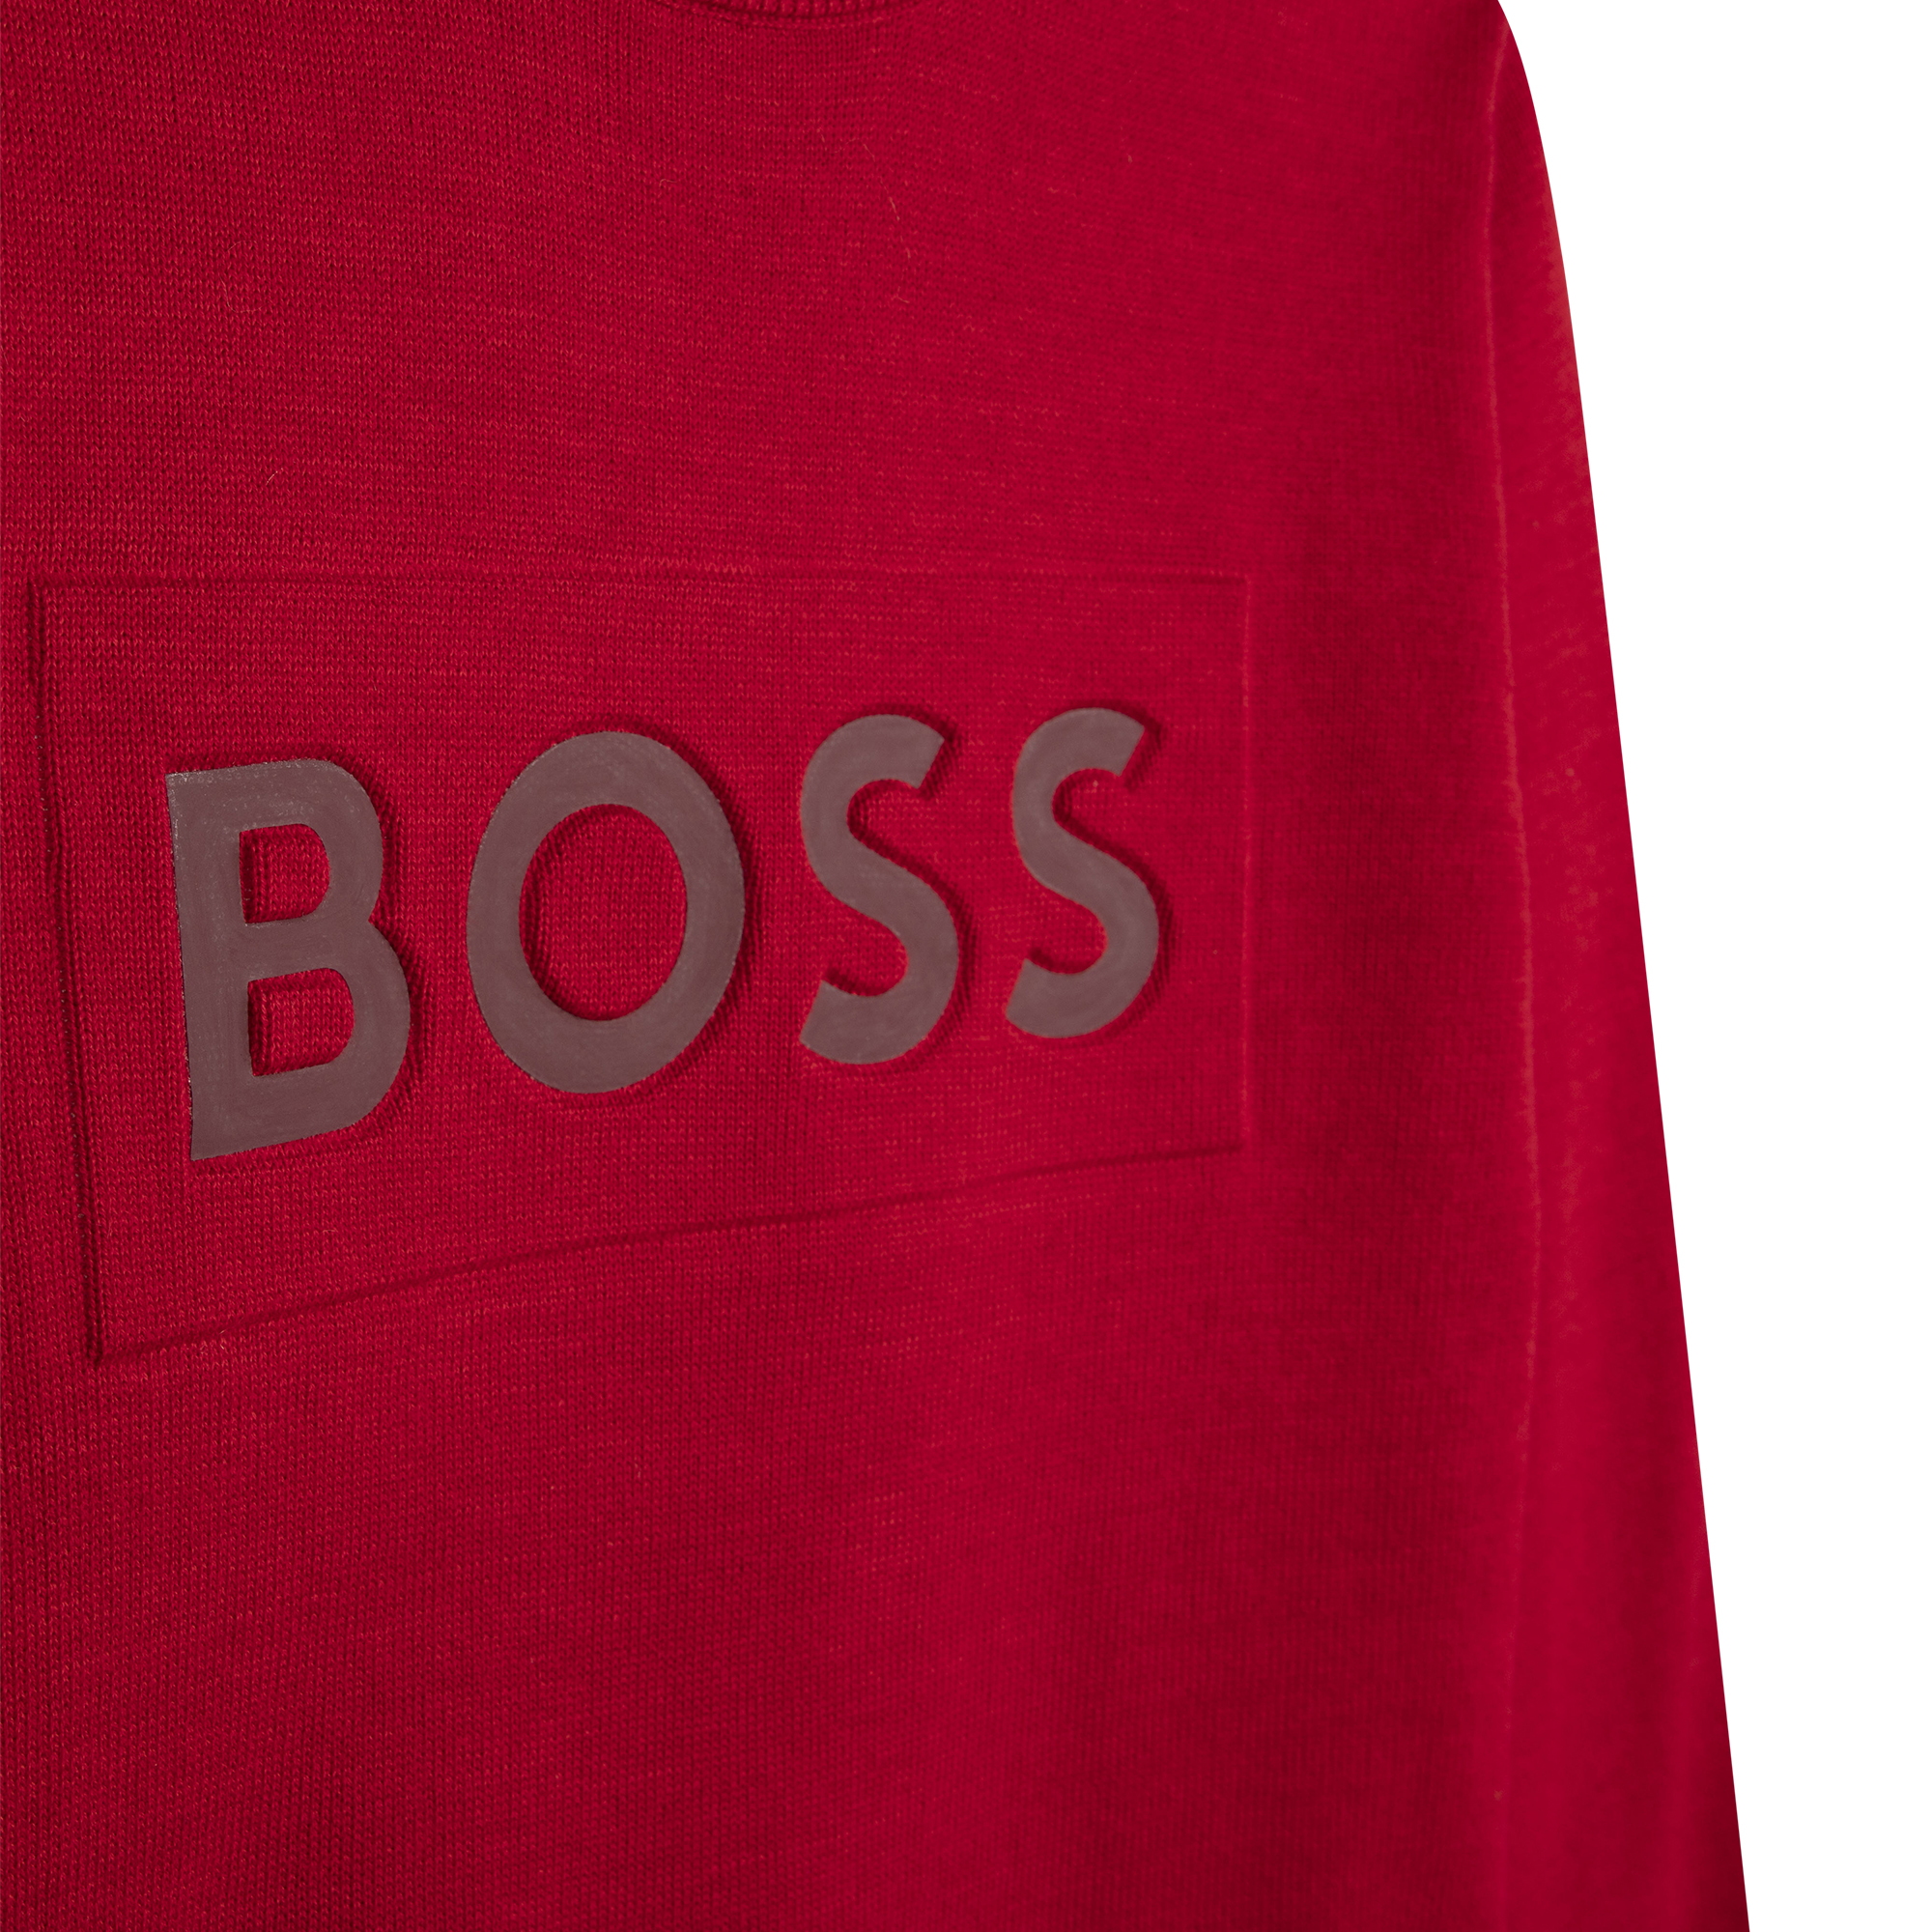 Katoenen trui met logo BOSS Voor